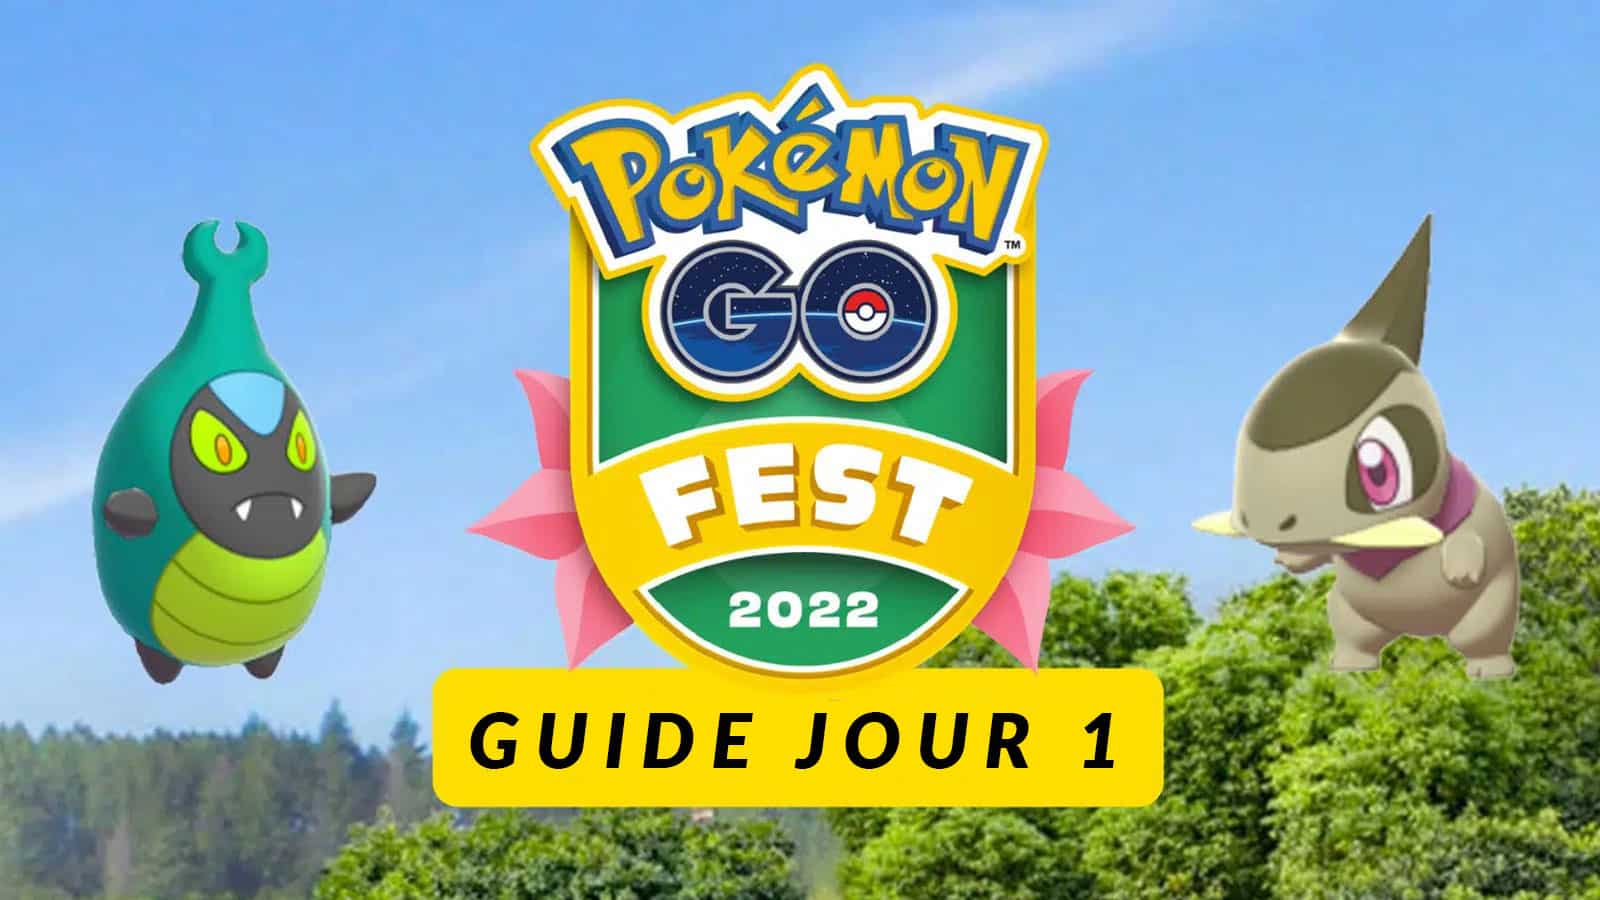 Pokémon Go Fest 2022 guide J1